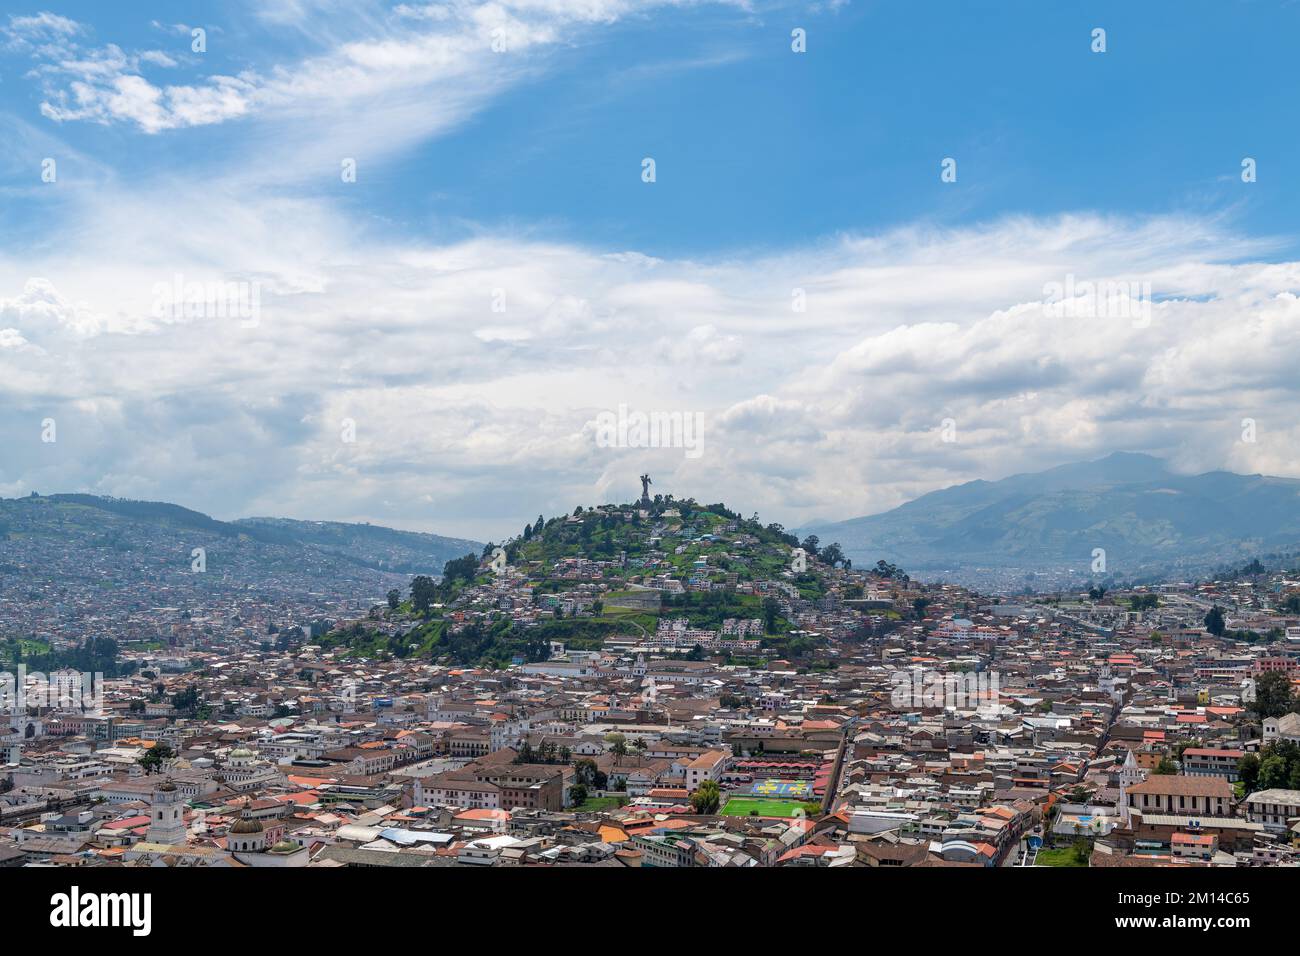 Aerial cityscape of Quito historic city center with Panecillo Hill and Virgin of Quito statue, Pichincha, Ecuador. Stock Photo